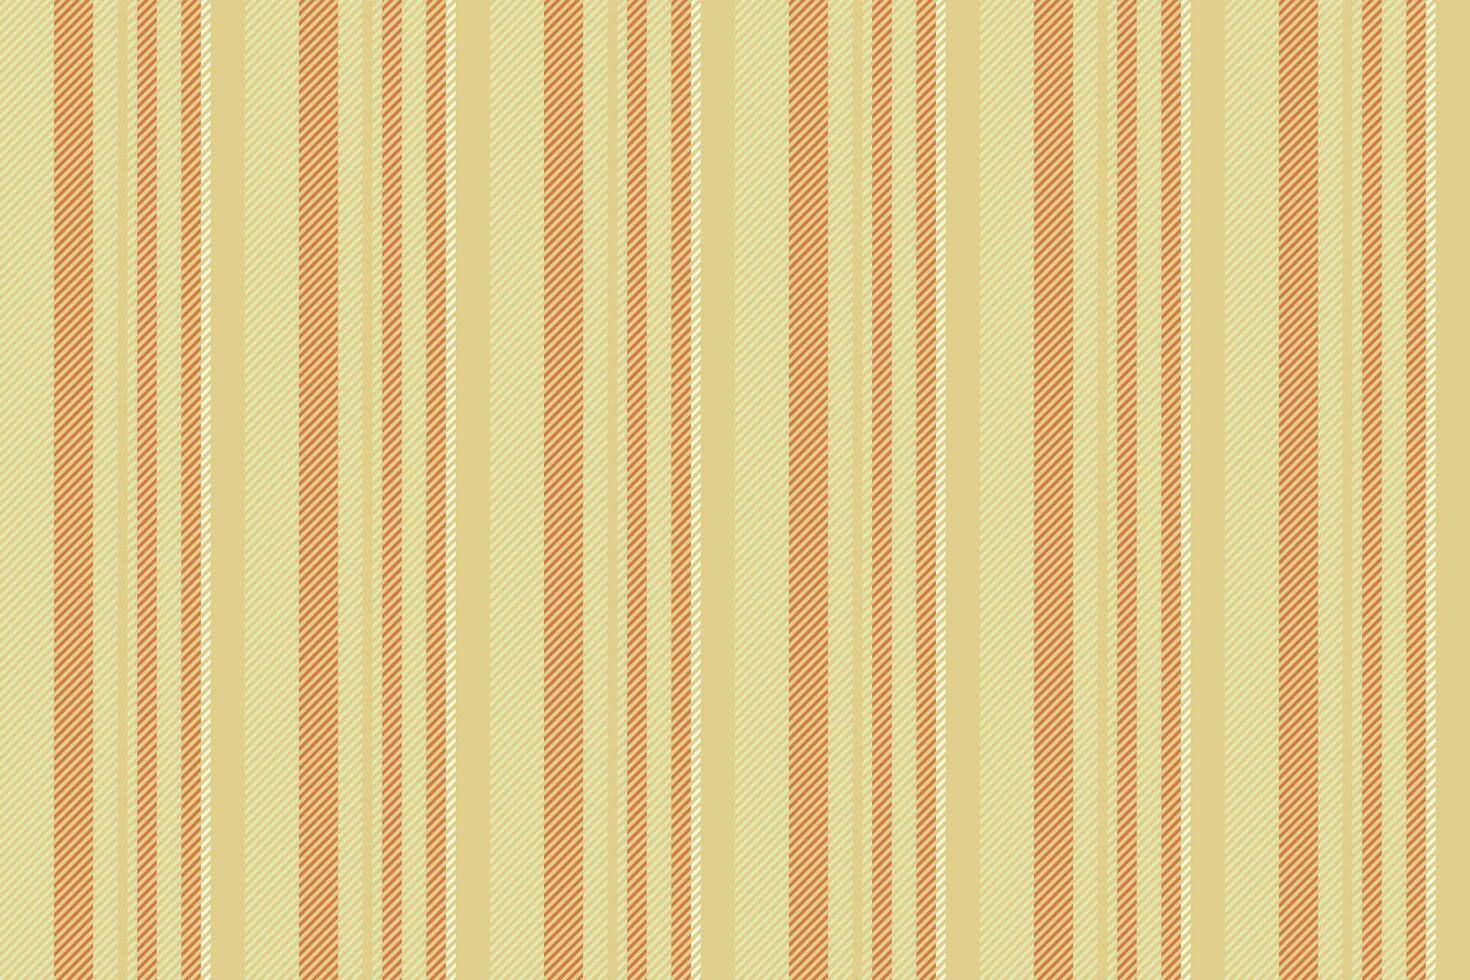 patroon structuur lijnen van kleding stof verticaal streep met een achtergrond textiel vector naadloos.